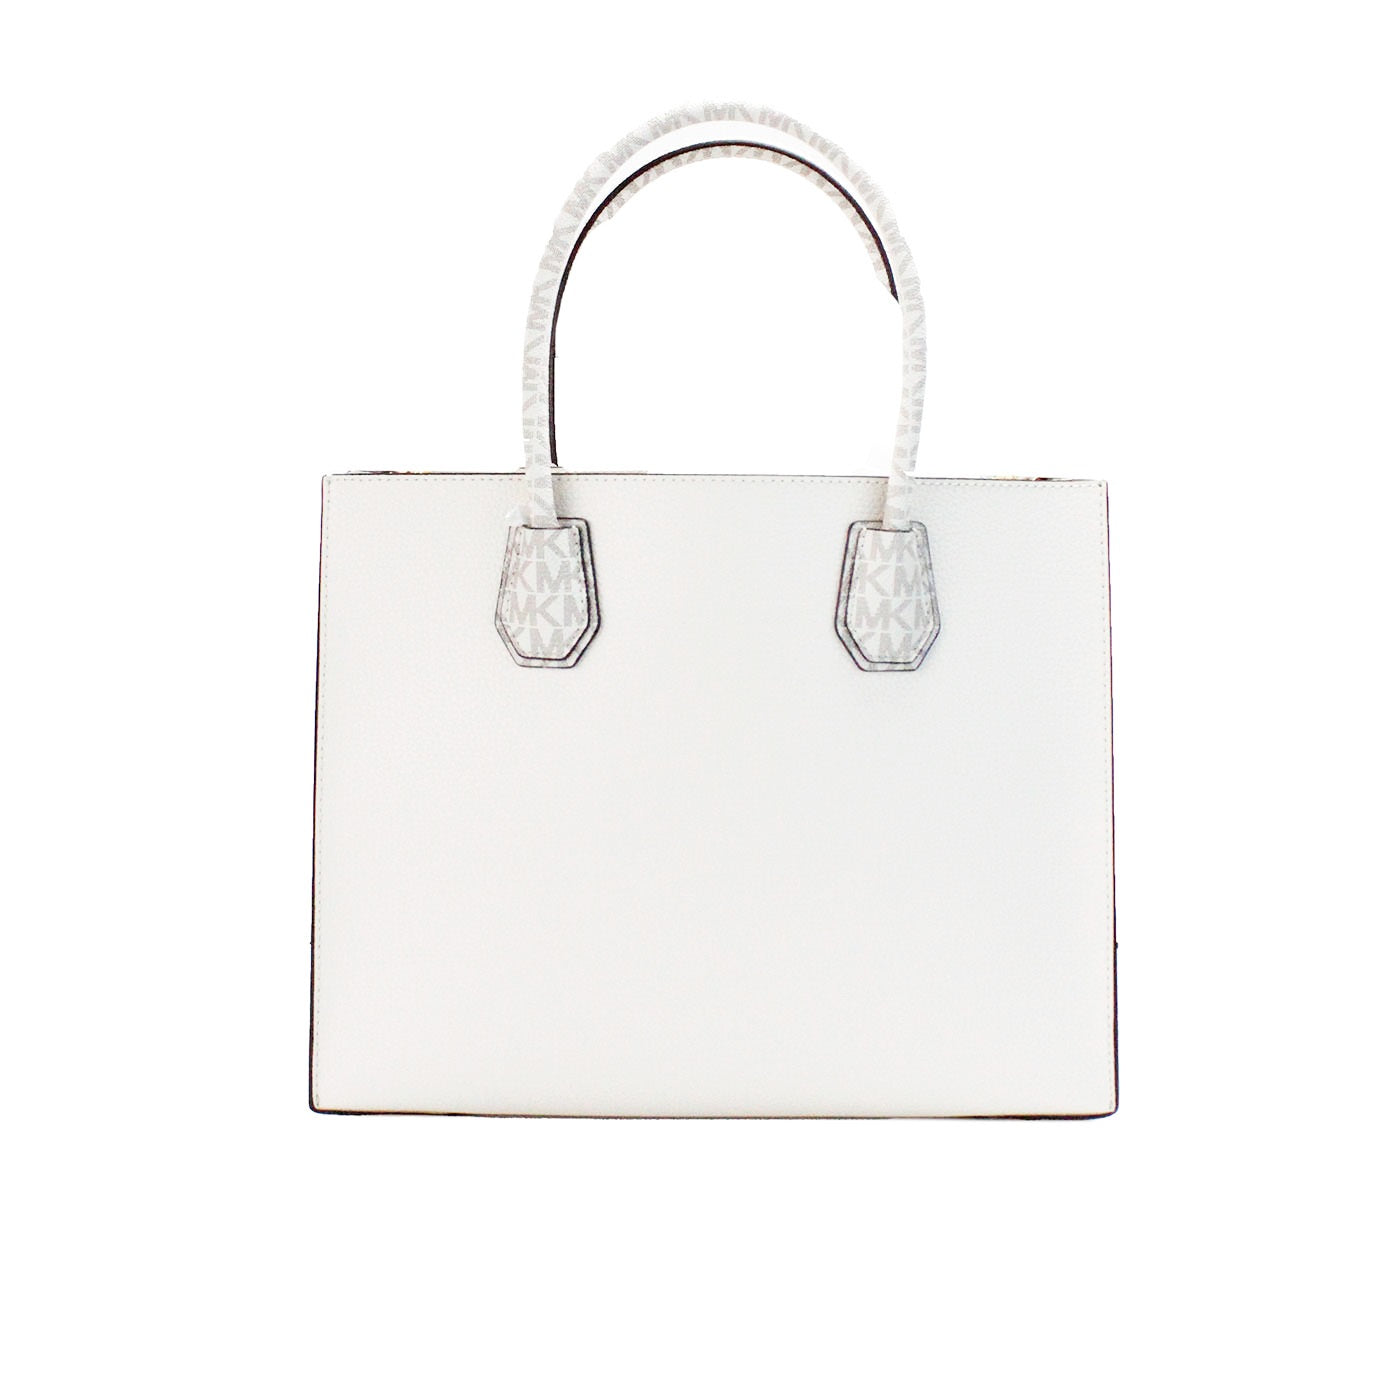 Michael Kors Mercer Large Light Cream Leather PVC Satchel Bag Crossbody Bag